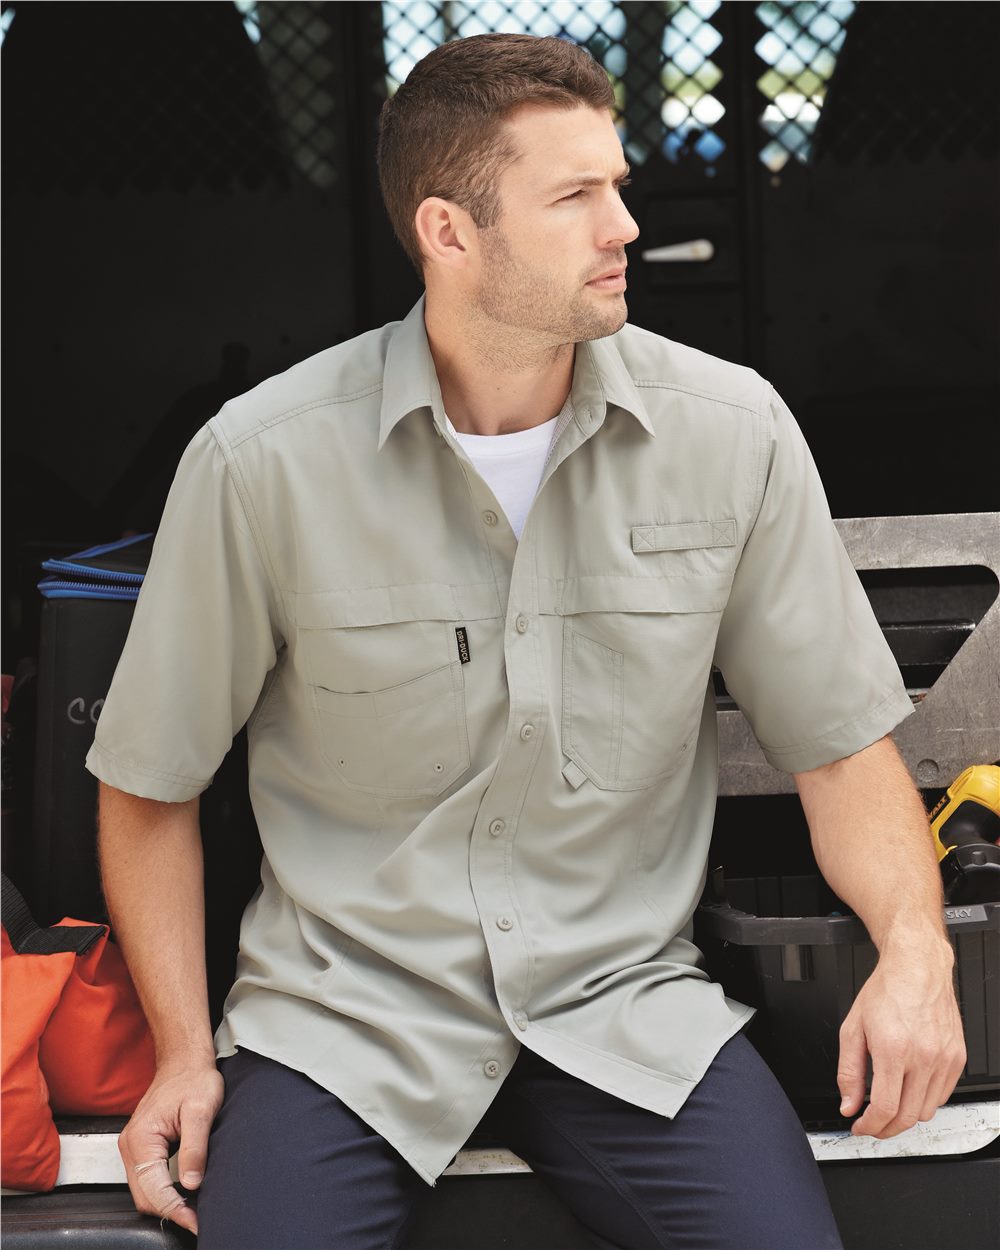 Men's Short Sleeve Fishing Shirt 